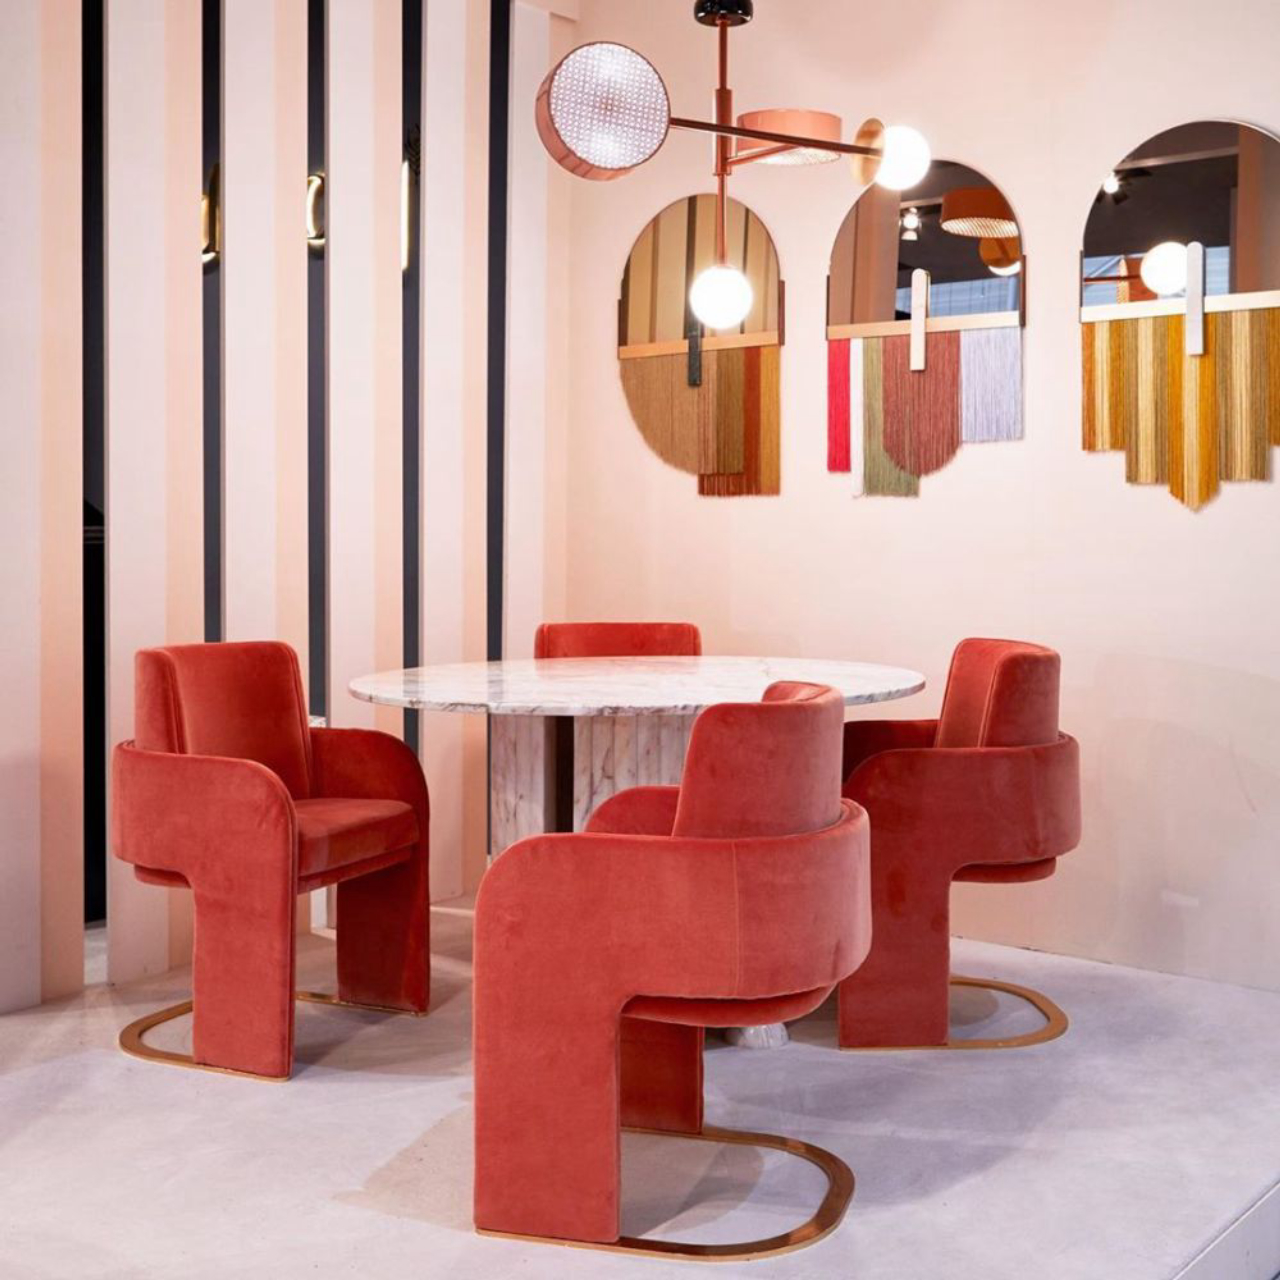 Cadeiras The Odissey, da Dooq, na Maison&amp;Objet. Foto: Reprodução/ Instagram